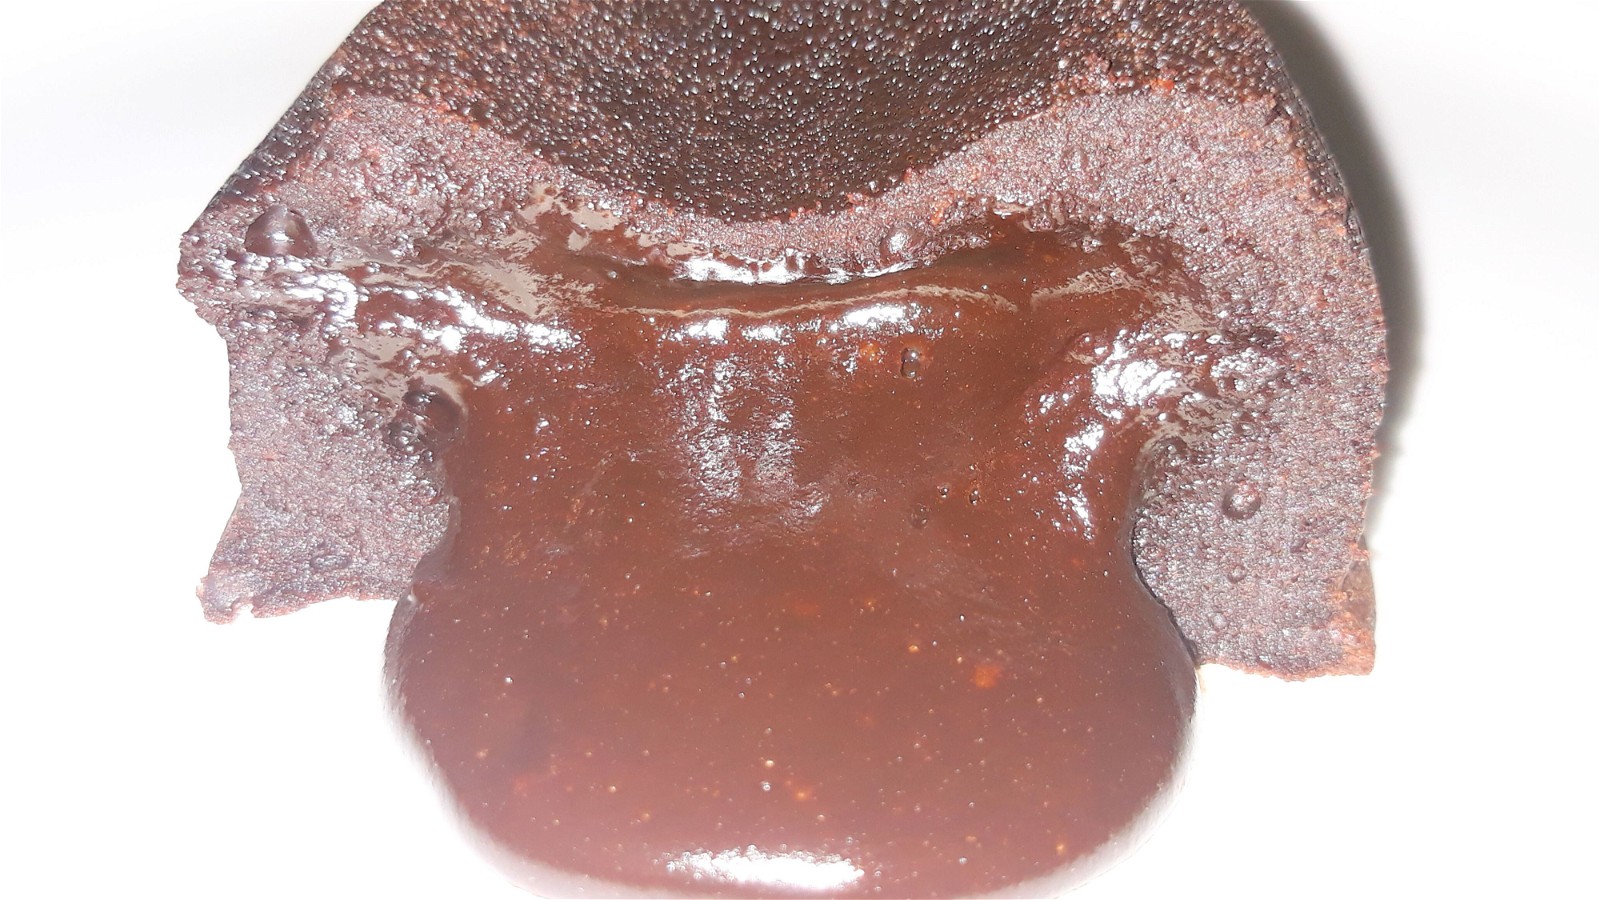 Image of Gâteau chocolat coeur coulant, une recette pleine de gourmandise